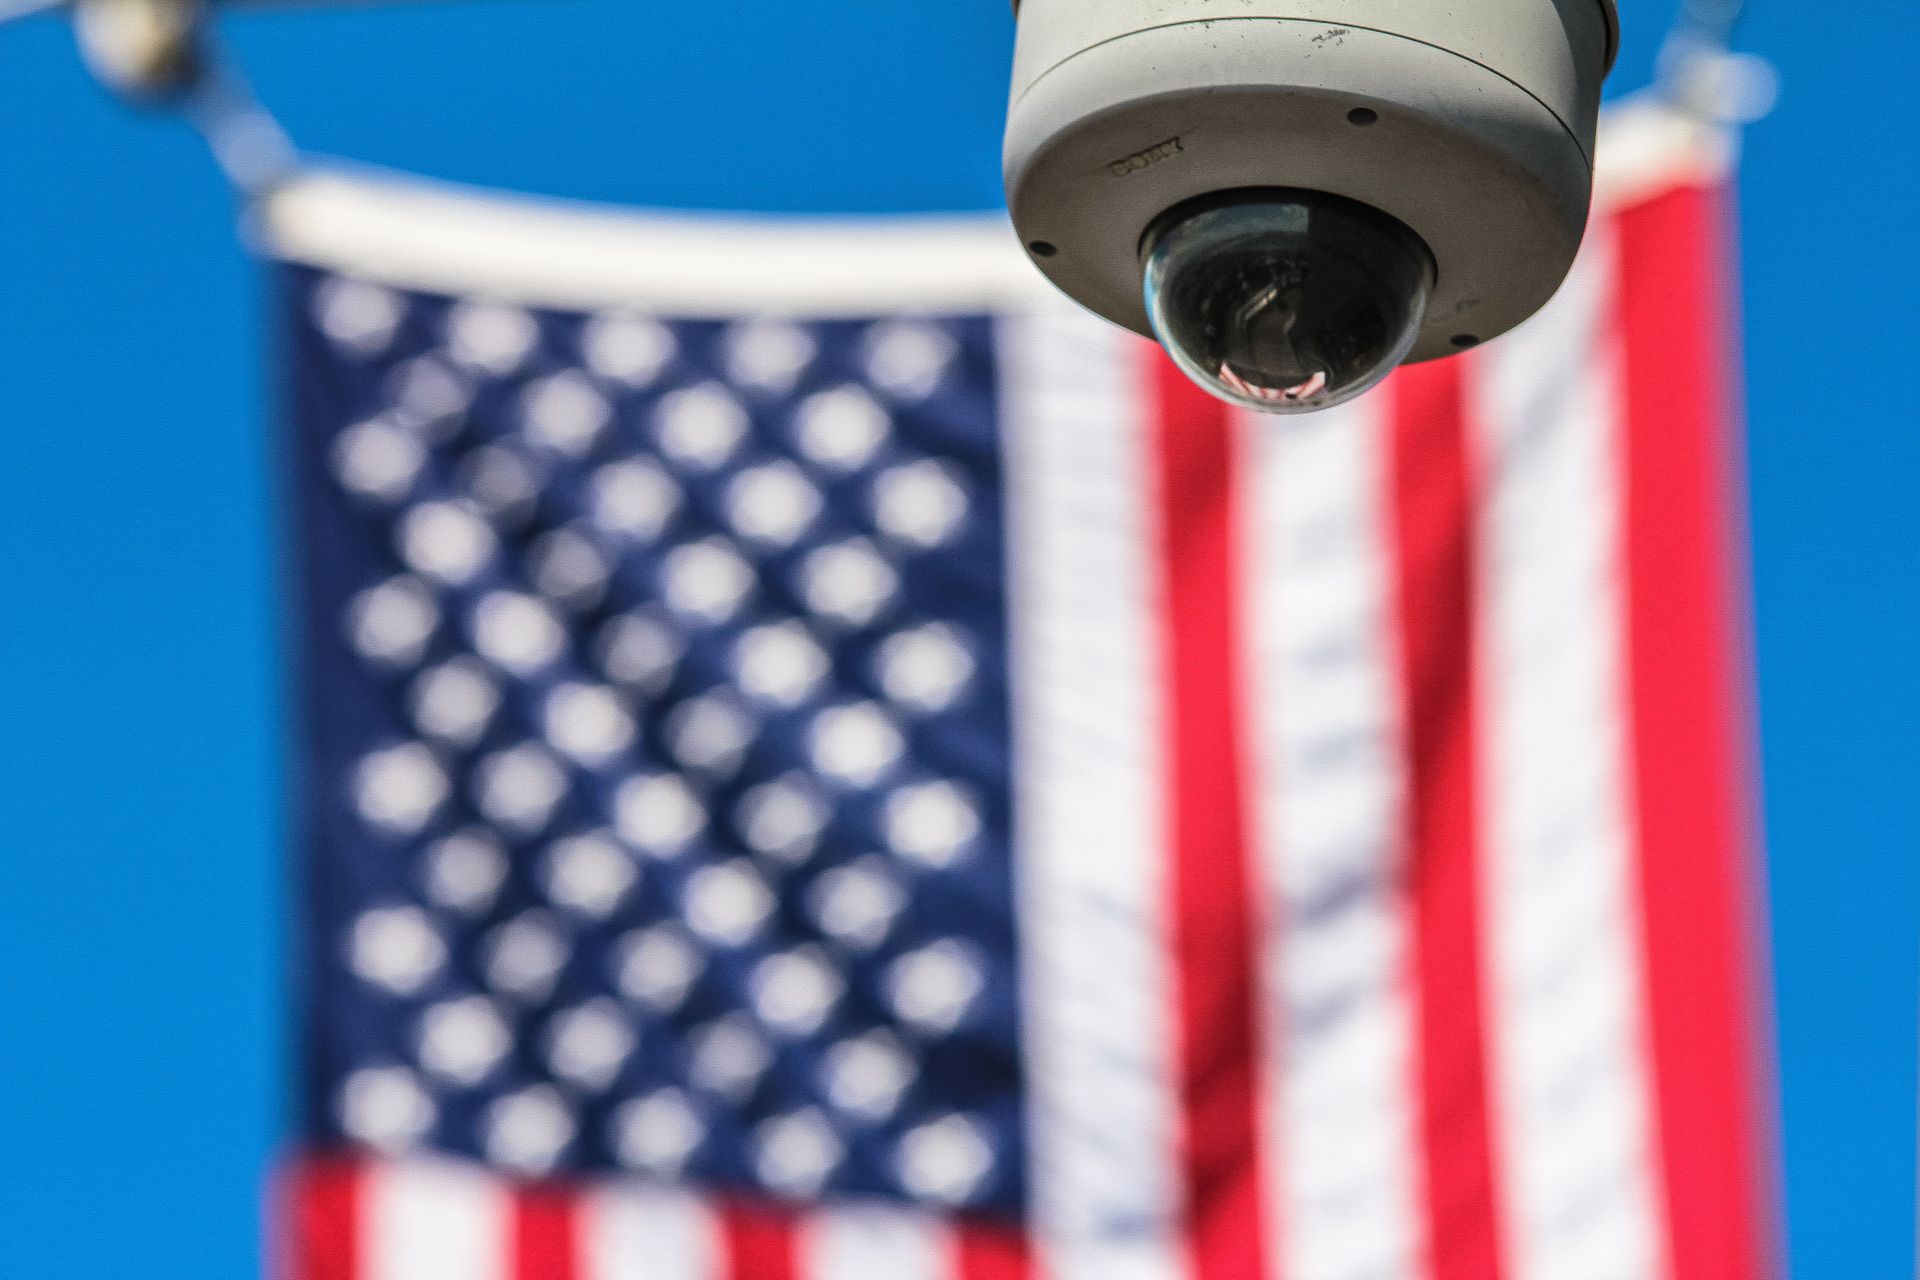 La bandiera a stelle e strisce degli Stati Uniti d'America sullo sfondo di una telecamera di videosorveglianza (Foto: Francesco Ungaro/Pexels)